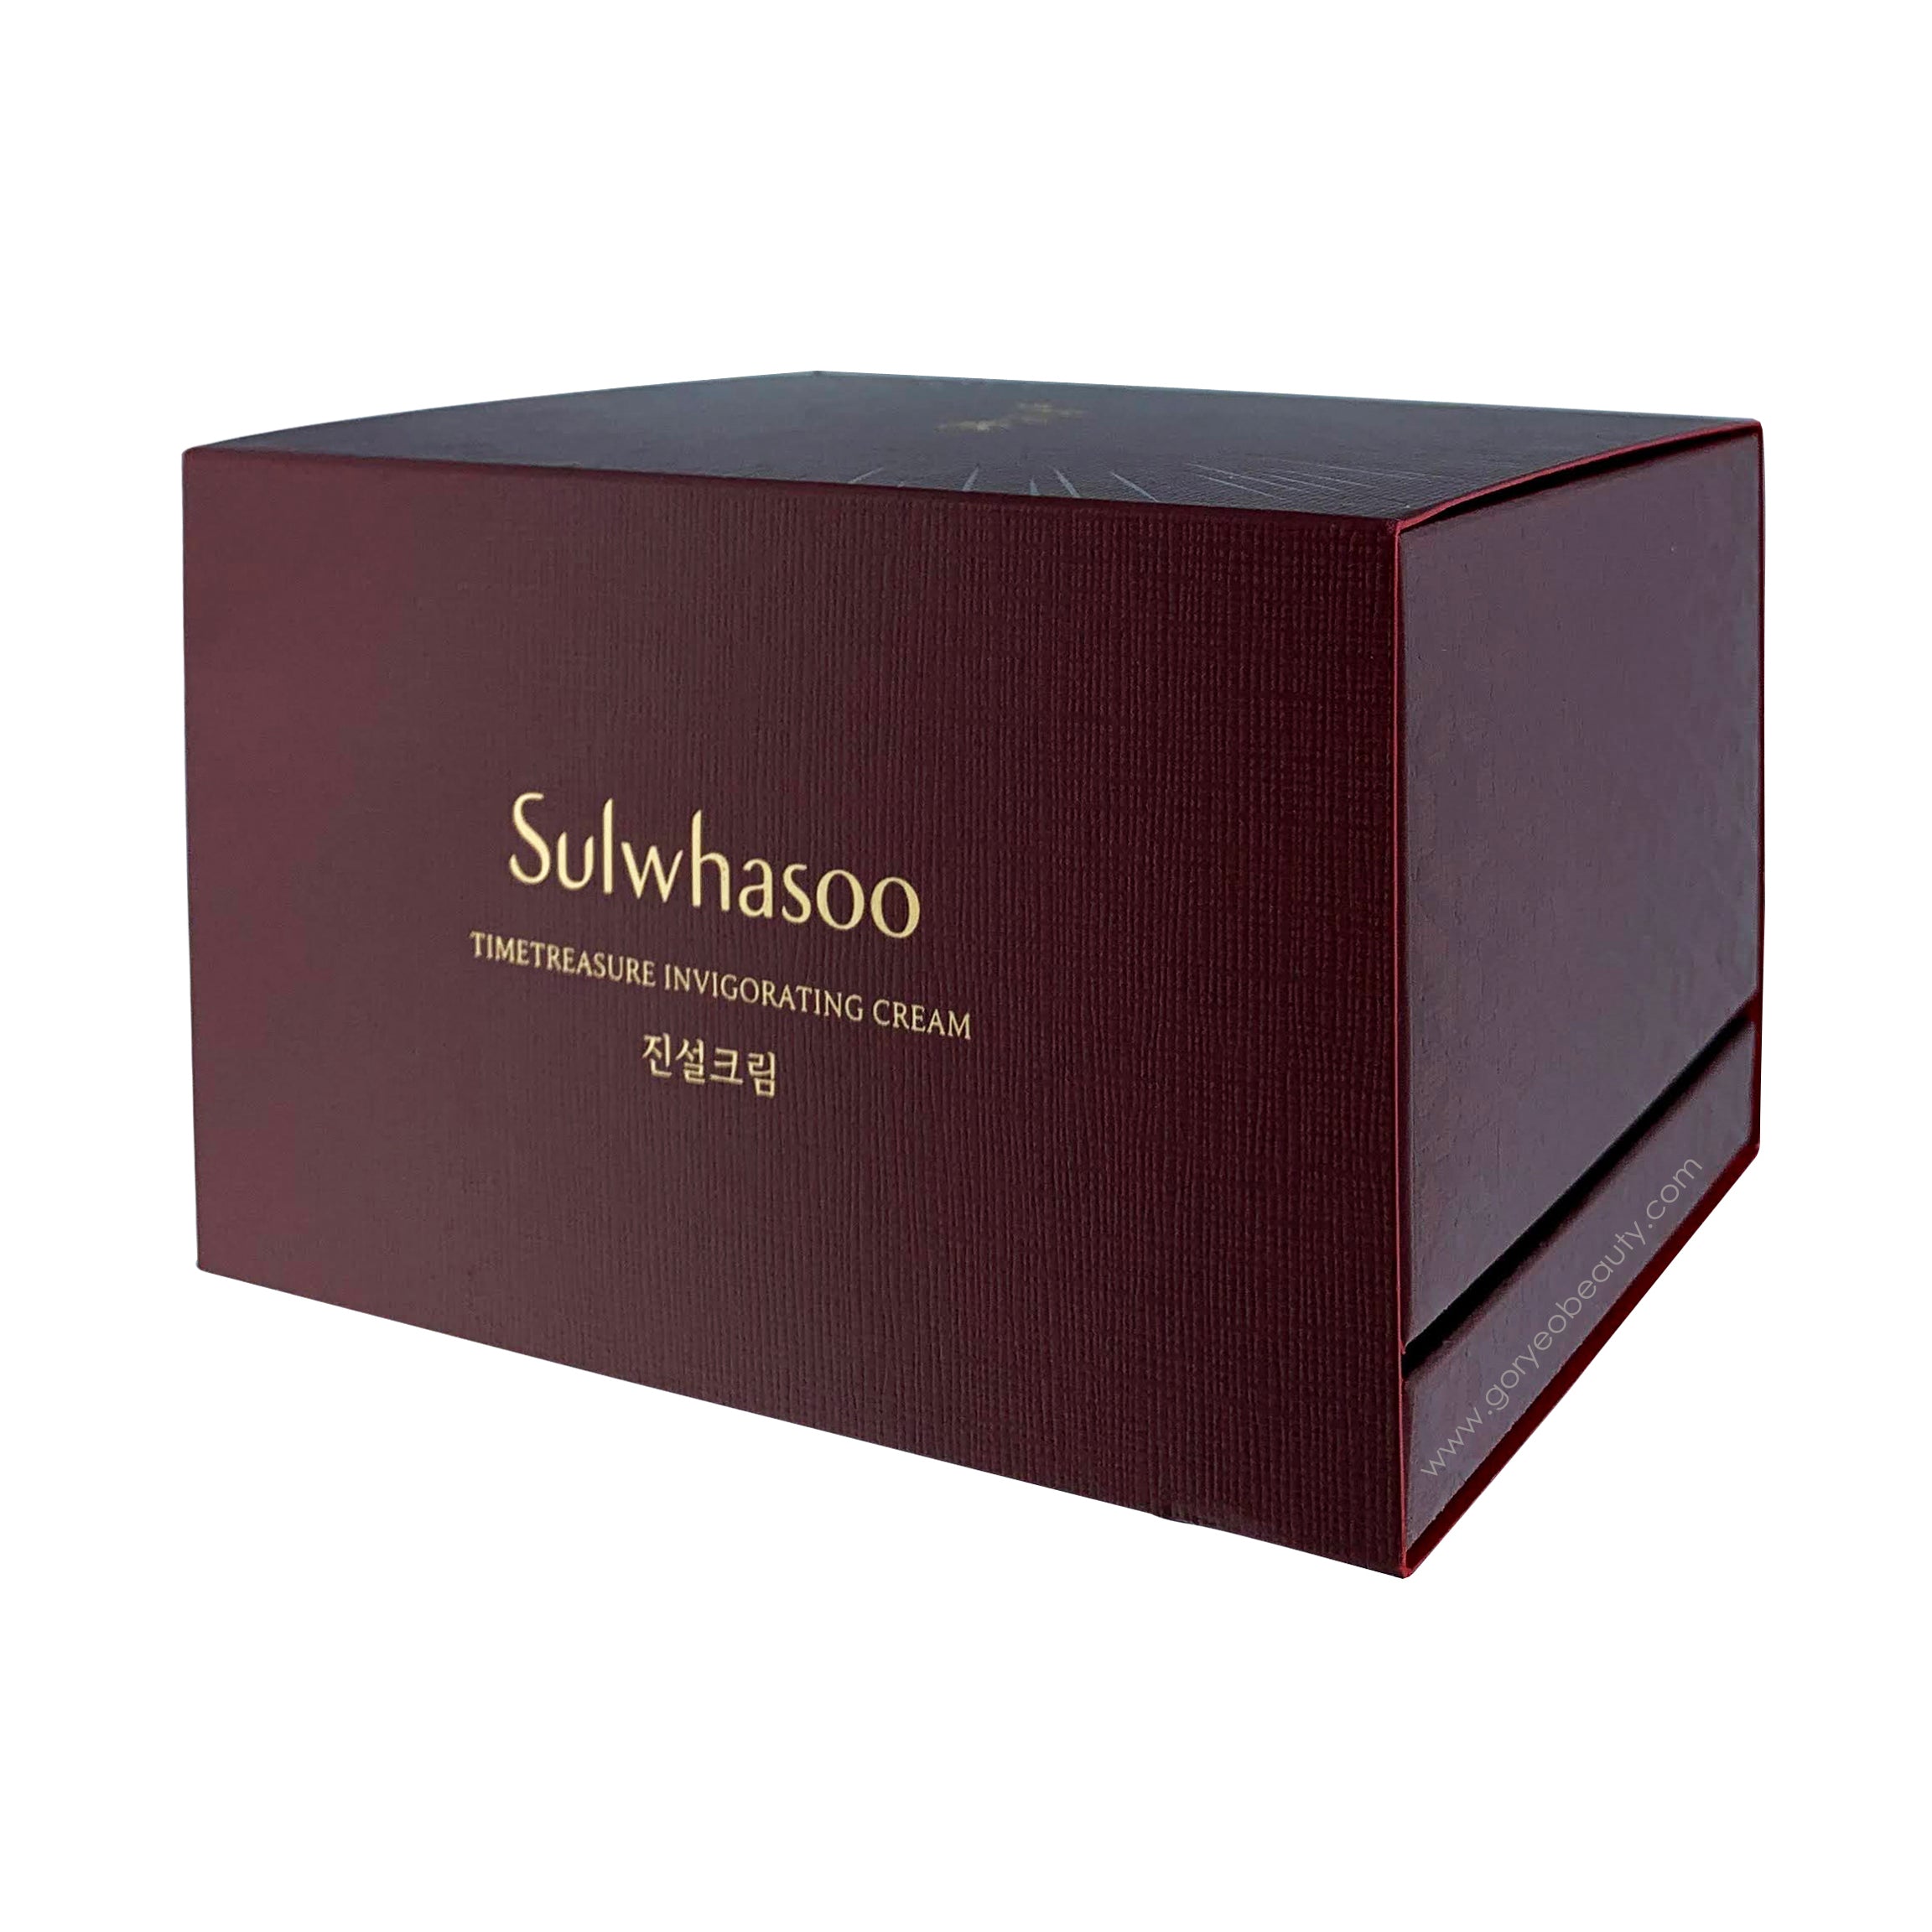 Sulwhasoo Timetreasure Invigorating Cream - Goryeo Cosmetics worldwide shop 